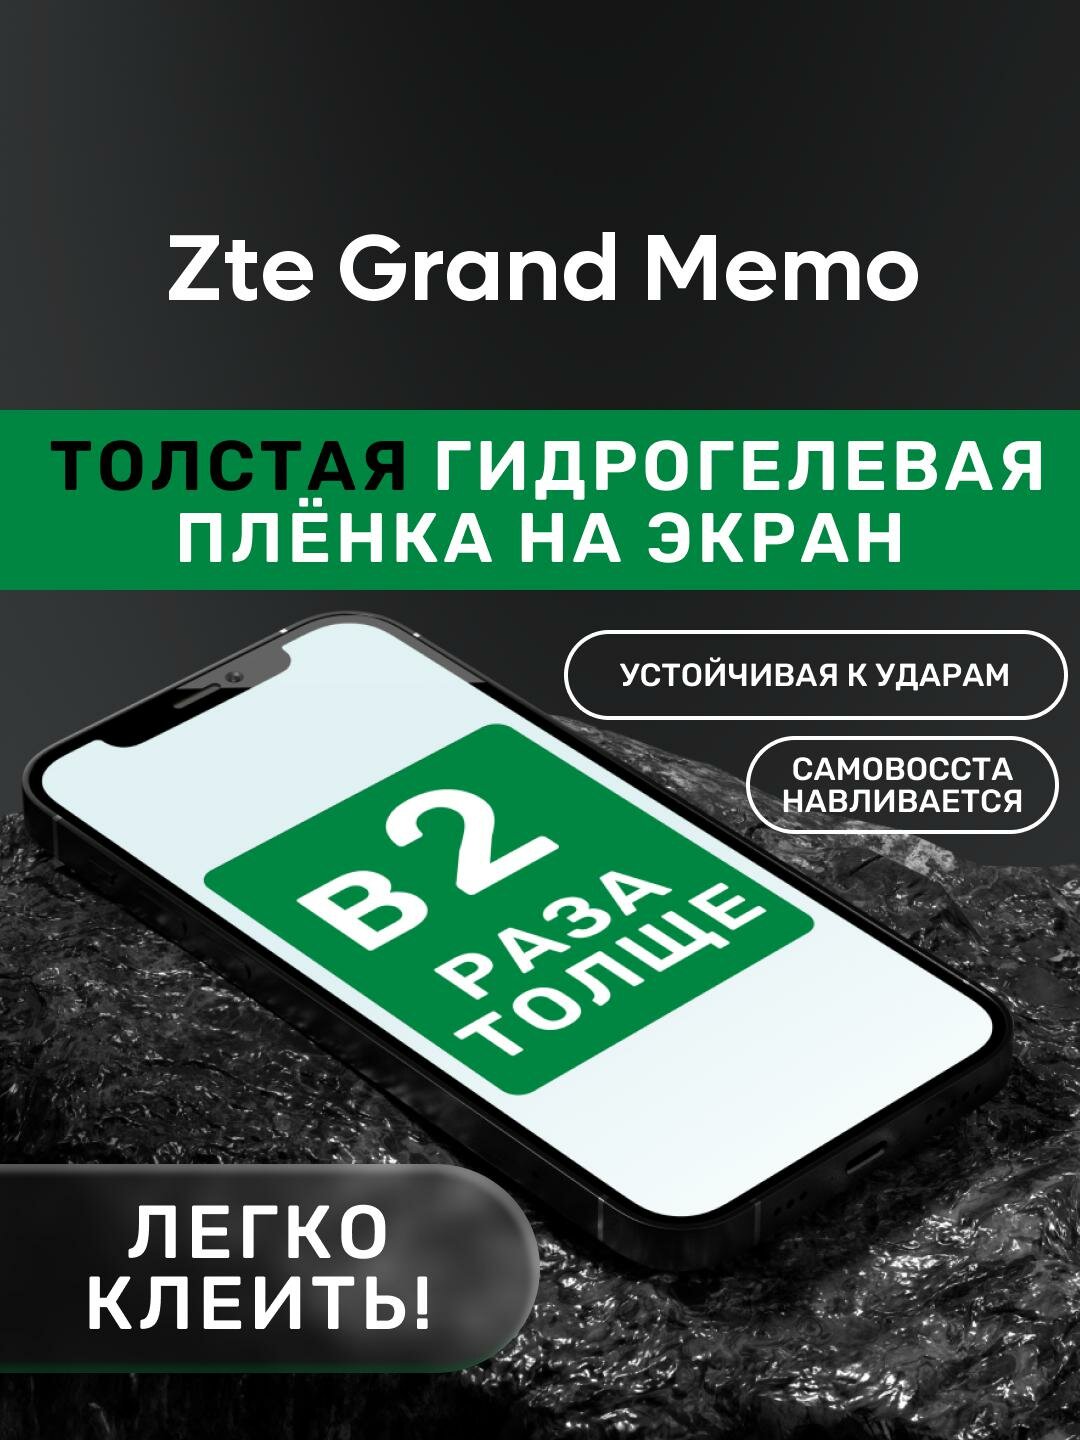 Гидрогелевая утолщённая защитная плёнка на экран для Zte Grand Memo